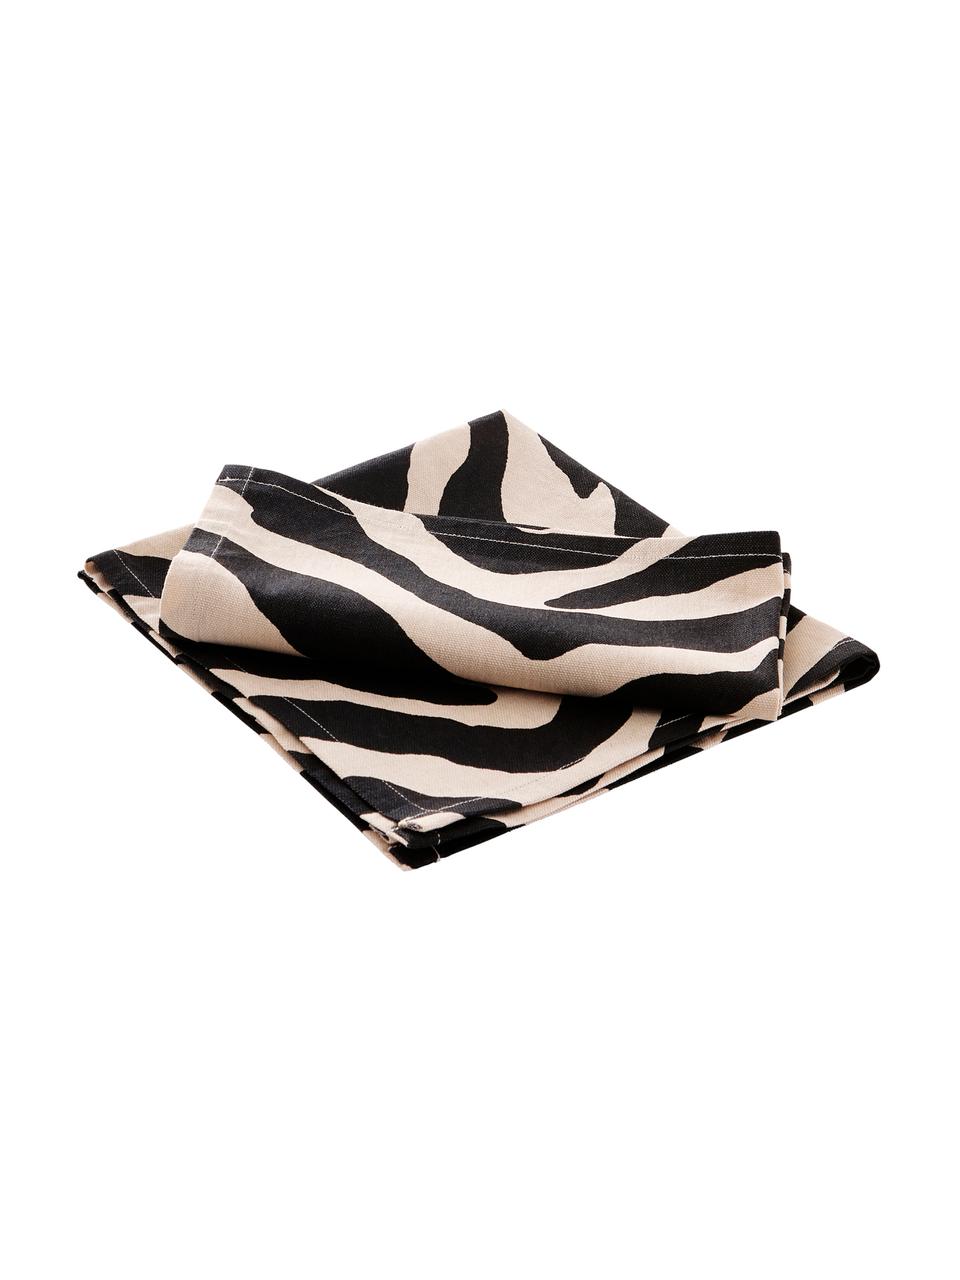 Stoff-Servietten Jill mit Zebra-Print, 2 Stück, 100% Baumwolle, Schwarz, Creme, B 45 x L 45 cm